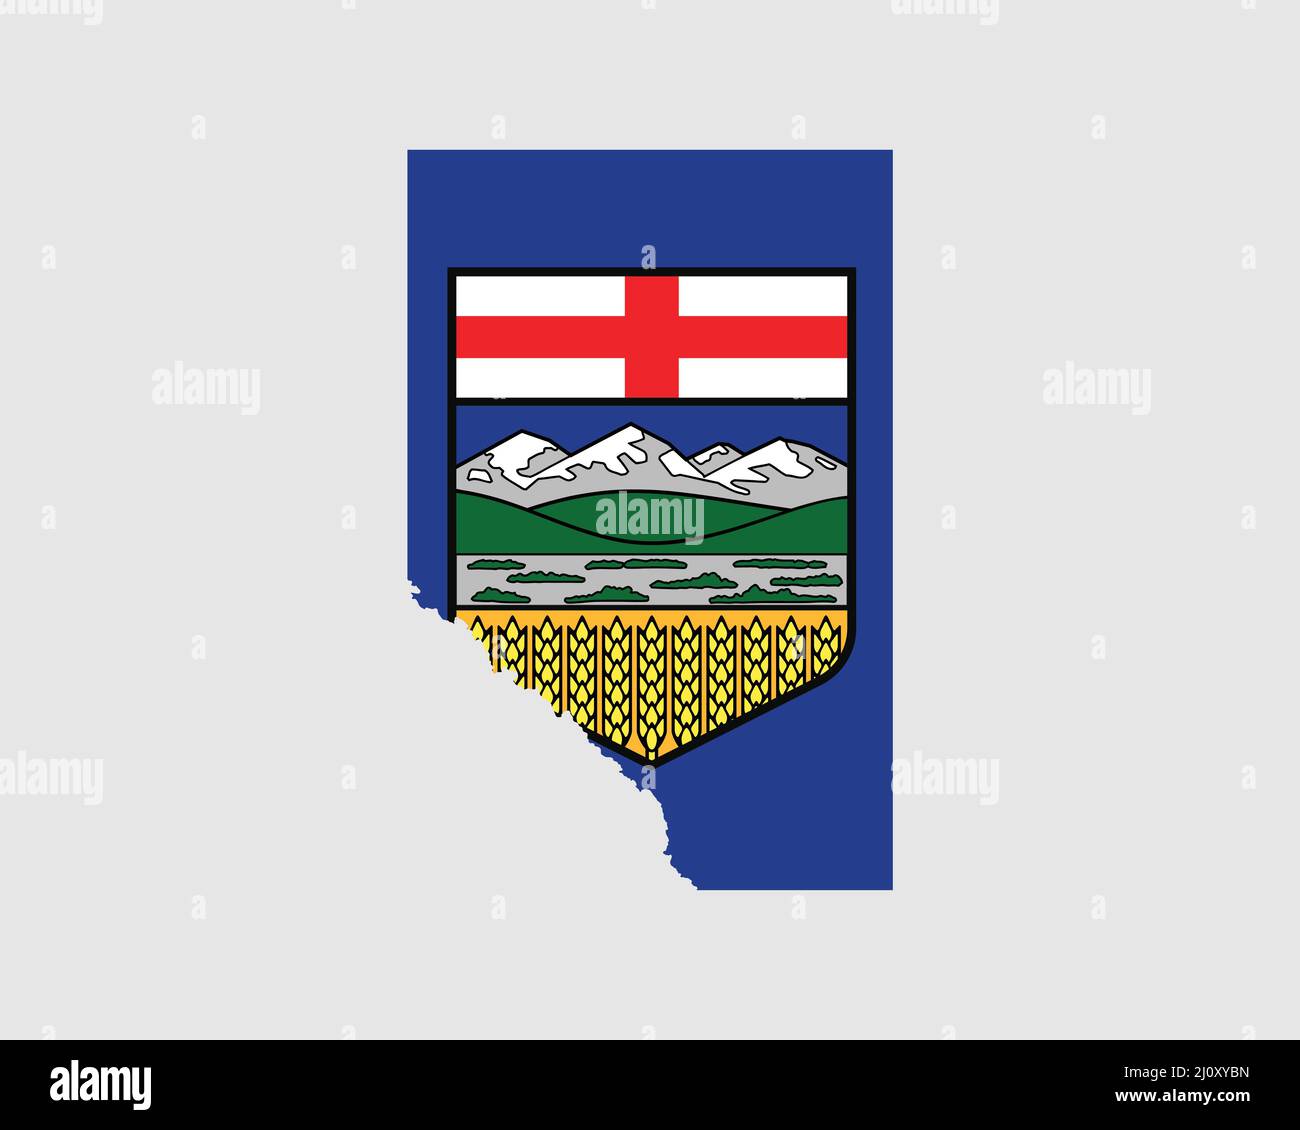 Drapeau de carte de l'Alberta. Carte de l'Alberta, Canada avec le drapeau du territoire de l'Alberta. Province canadienne, AB. Bannière d'illustration vectorielle. Illustration de Vecteur